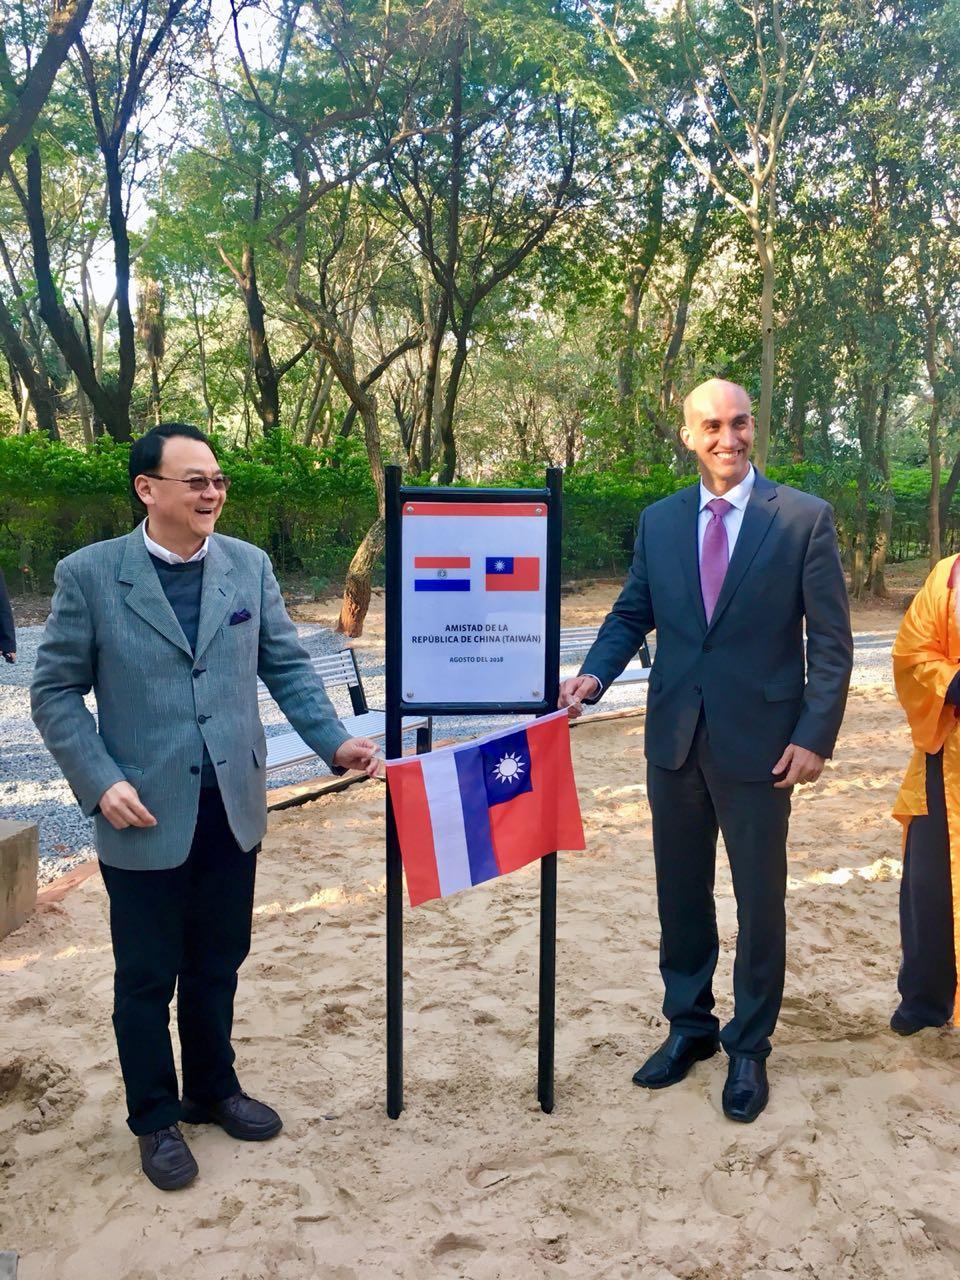 La Embajada de la República de China (Taiwán) donó equipamientos deportivos y juegos infantiles al Parque de la Salud del Instituto de Previsión Social. La entrega se realizó el dia 9 de agosto, 2018 con presencia de autoridades de la Embajada de Taiwán, la previsional e invitados especiales. El 
Embajador de Taiwán Diego L. Chou y el Dr. Julio Mazzoleni habilitaron el nuevo sector del parque de IPS.